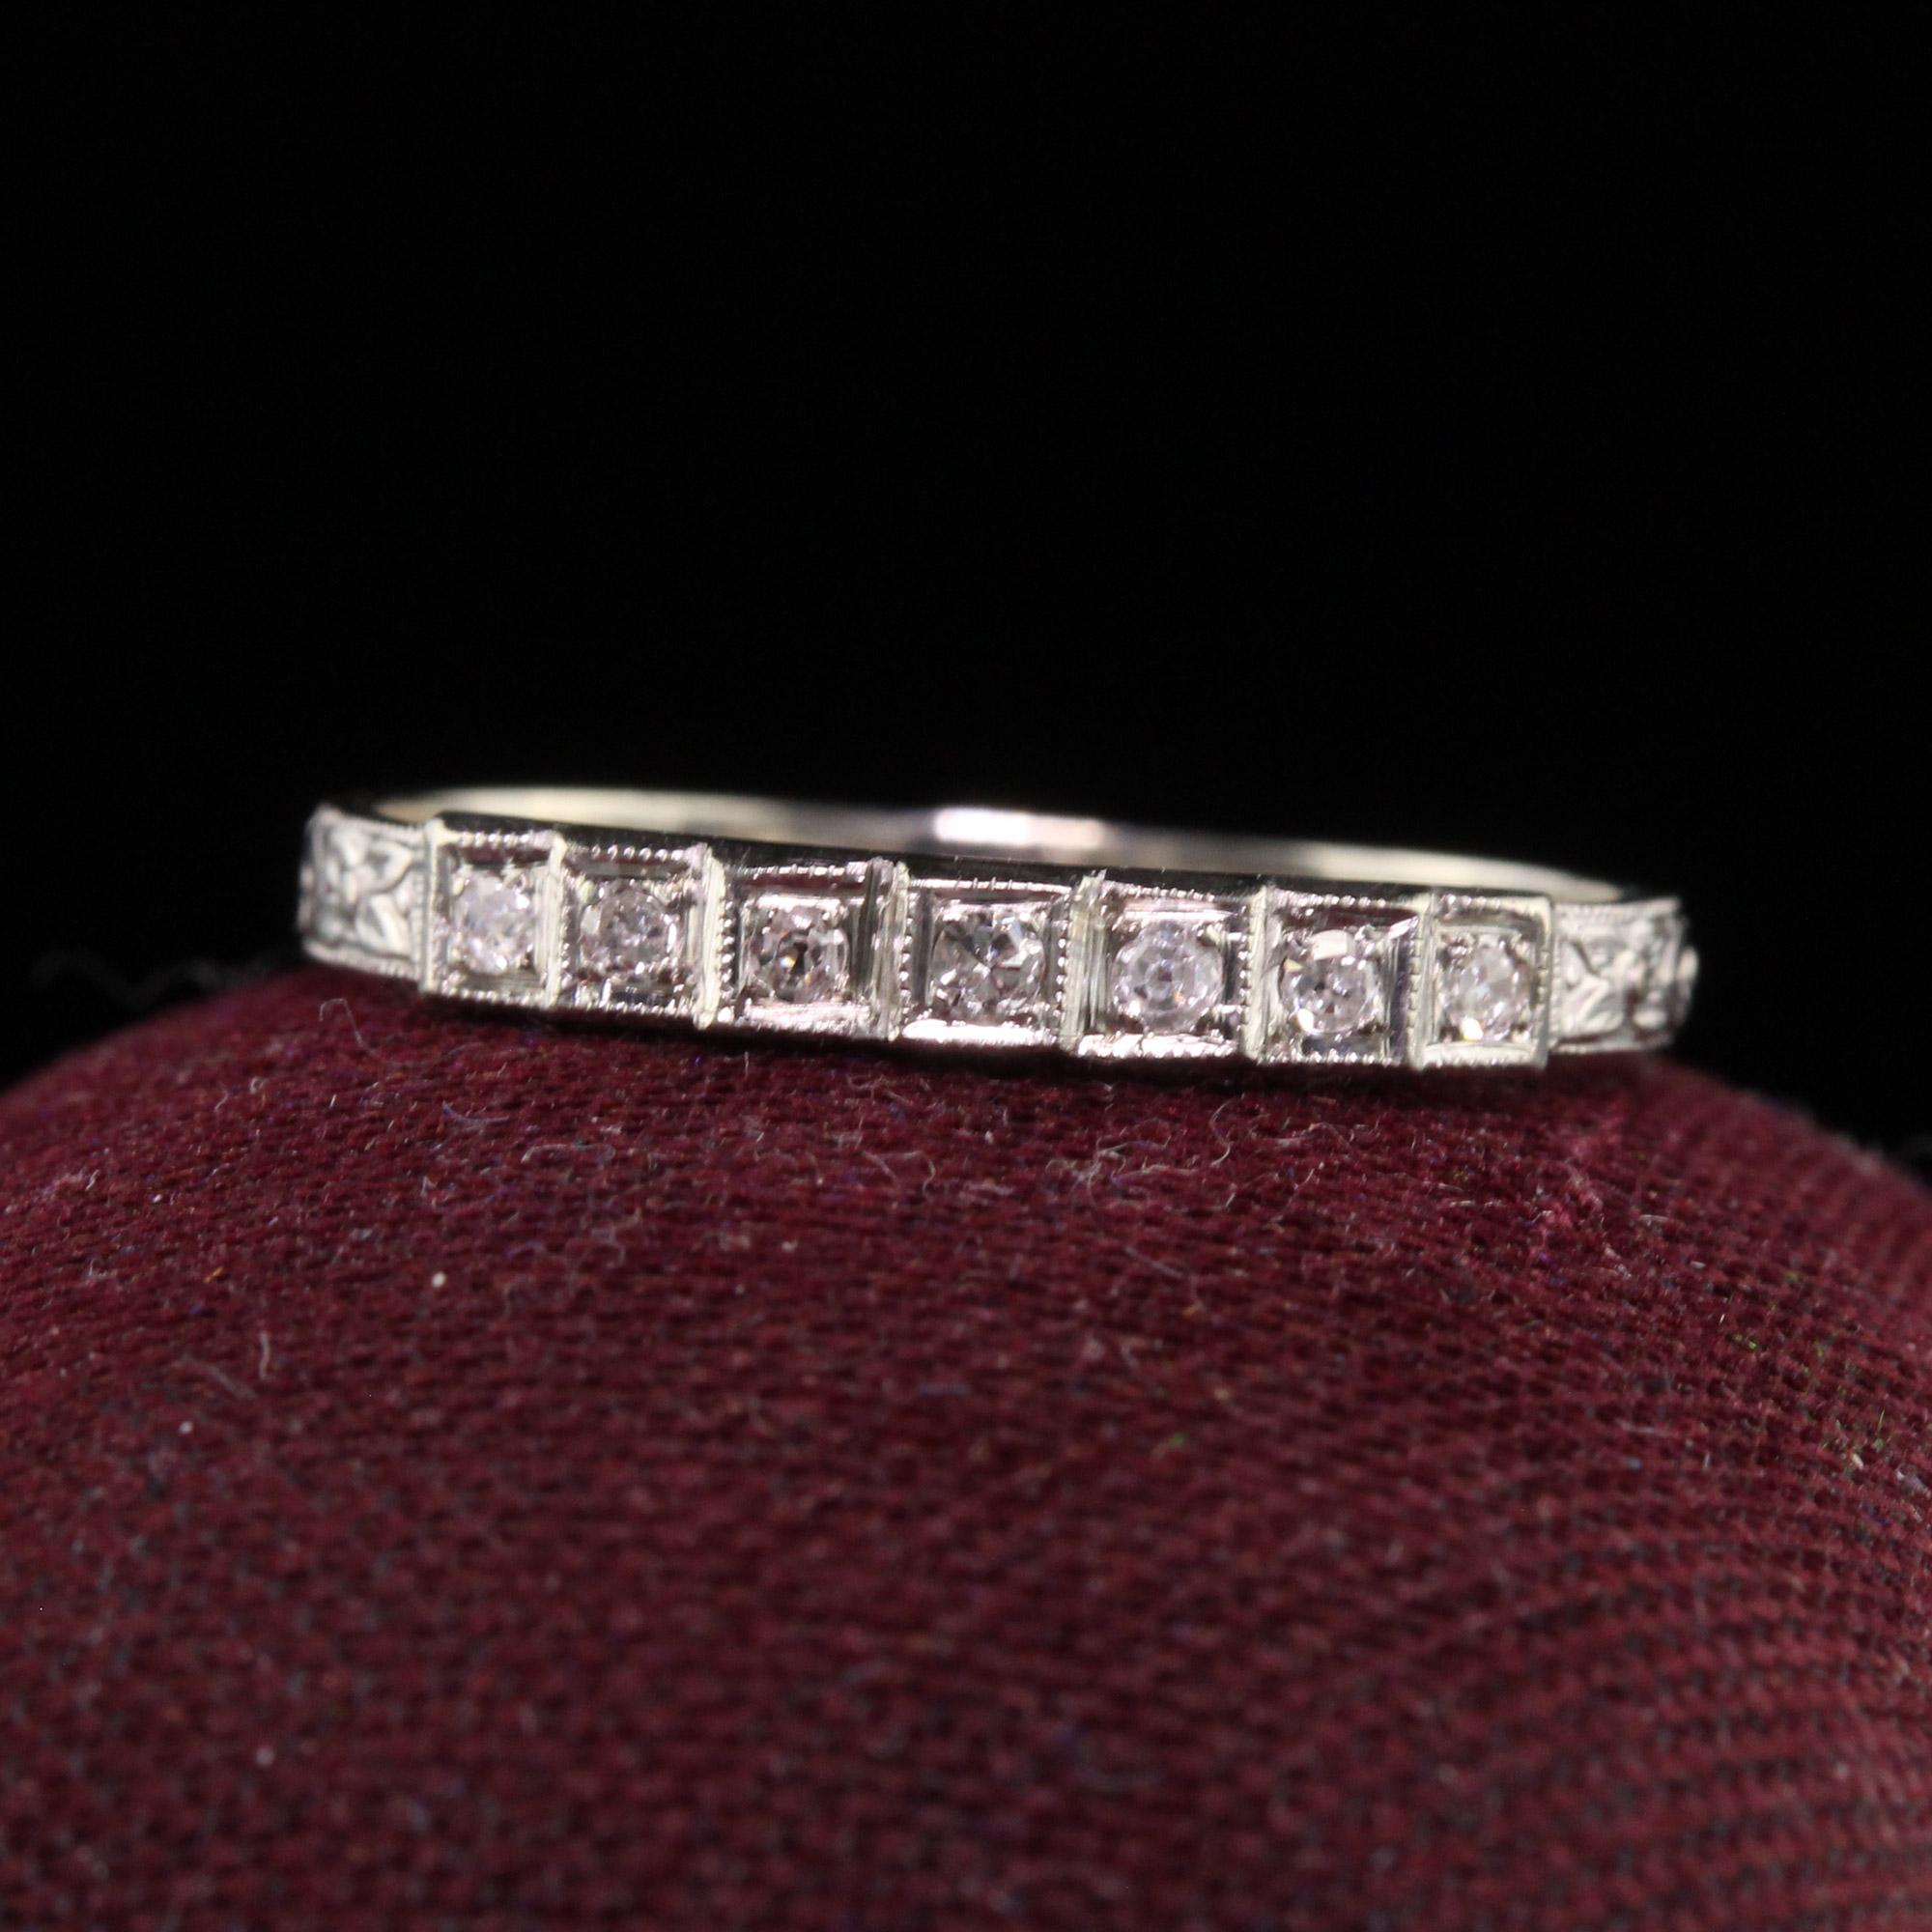 Magnifique bague ancienne Art Deco en or blanc 18K O Romance Diamond Wedding Band. Cette magnifique alliance est réalisée en or blanc 18 carats. L'anneau comporte sept diamants de taille unique sertis dans une monture d'alliance Art déco.